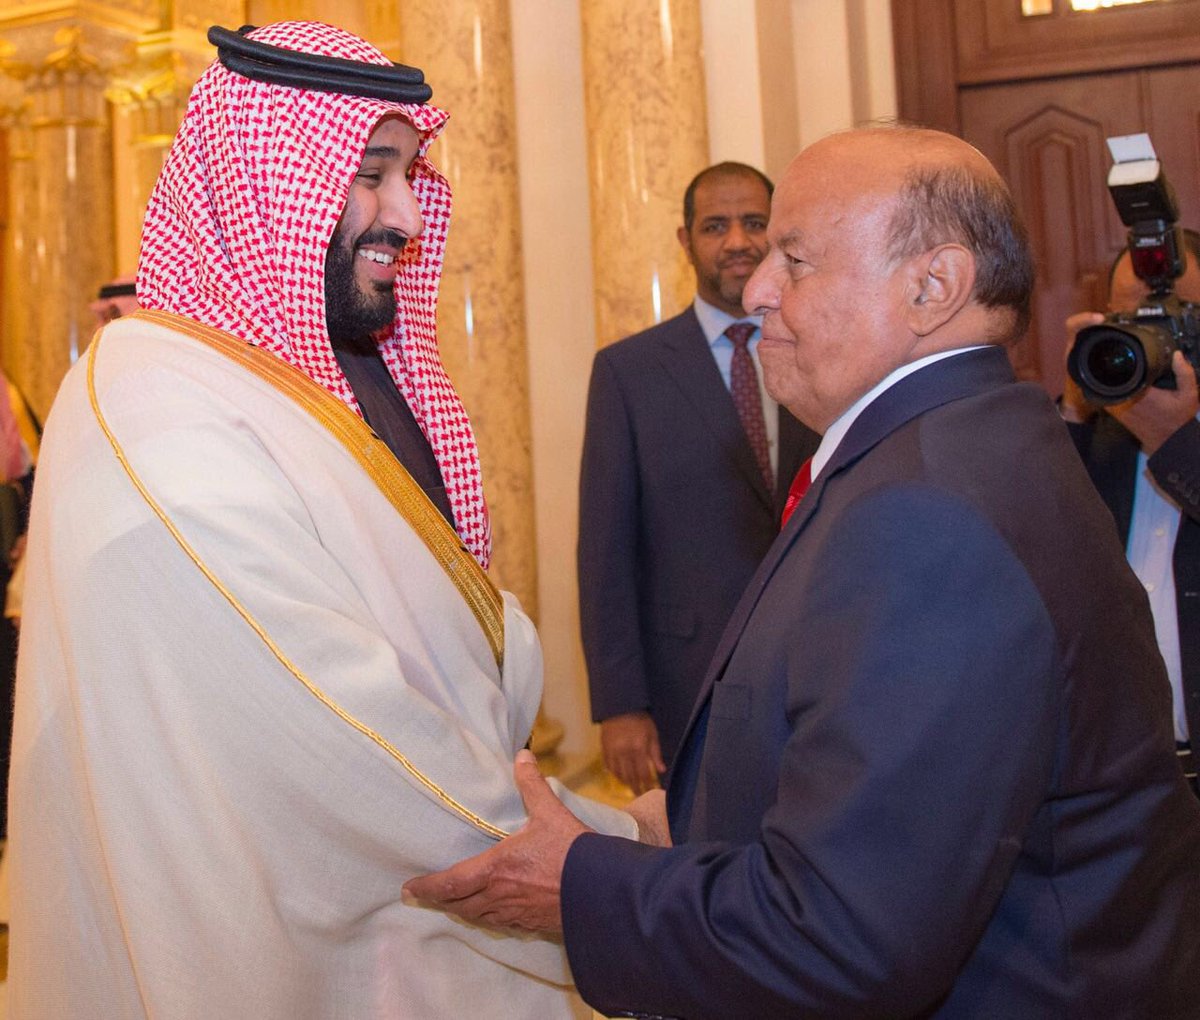 الرئيس هادي يستقبل الأمير محمد بن سلمان في مقر إقامته ويبحث معه آخر المستجدات اليمنية (صورة)